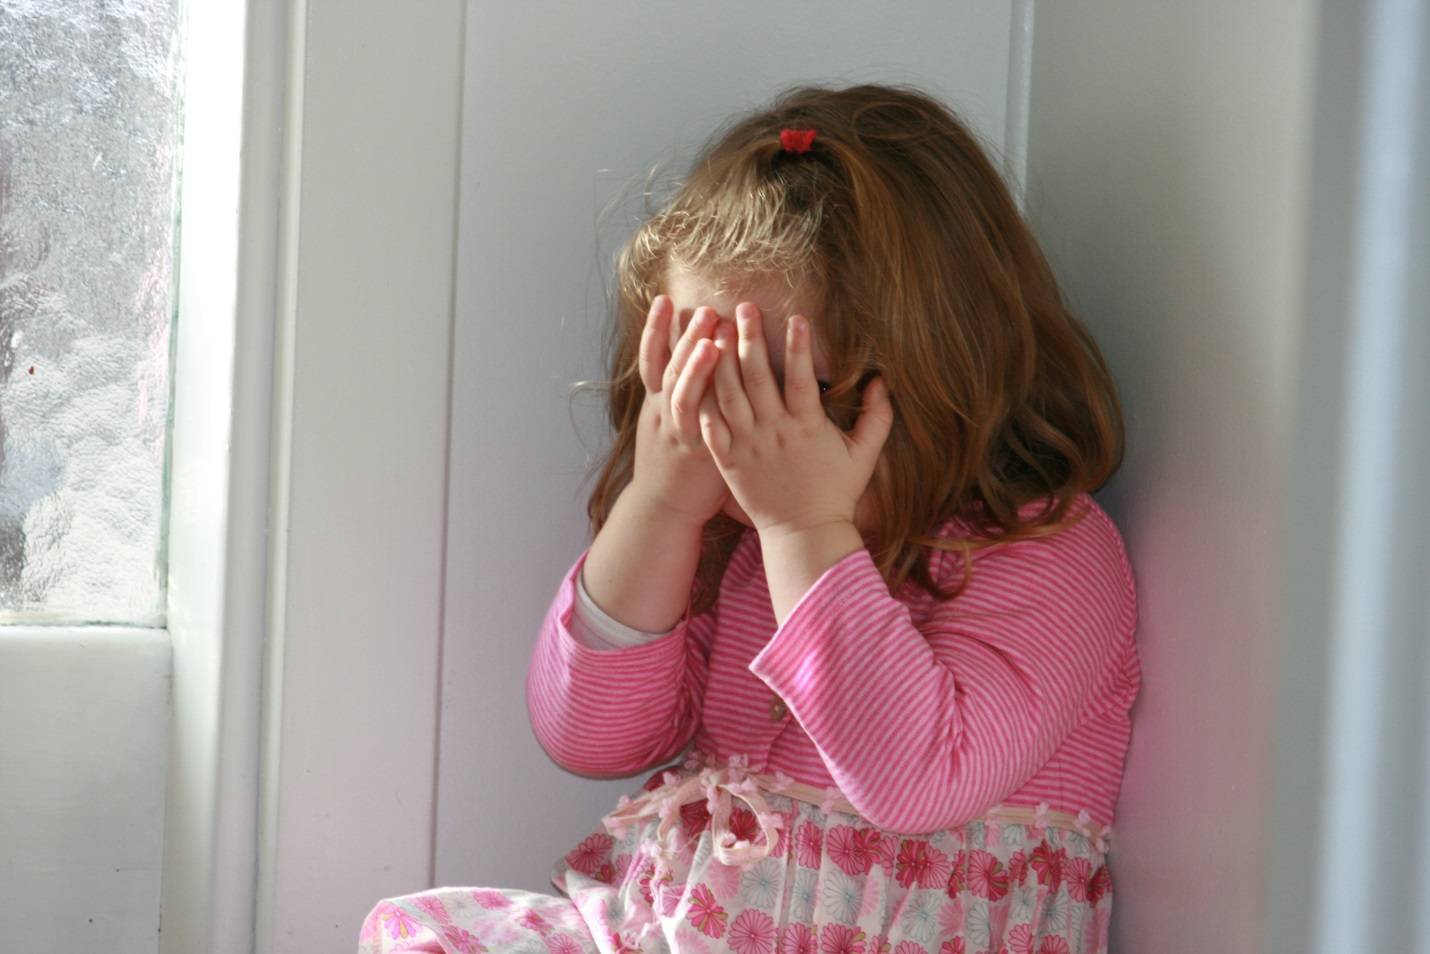 Ребенок боится оставаться один в комнате, что делать? — психологический центр инсайт